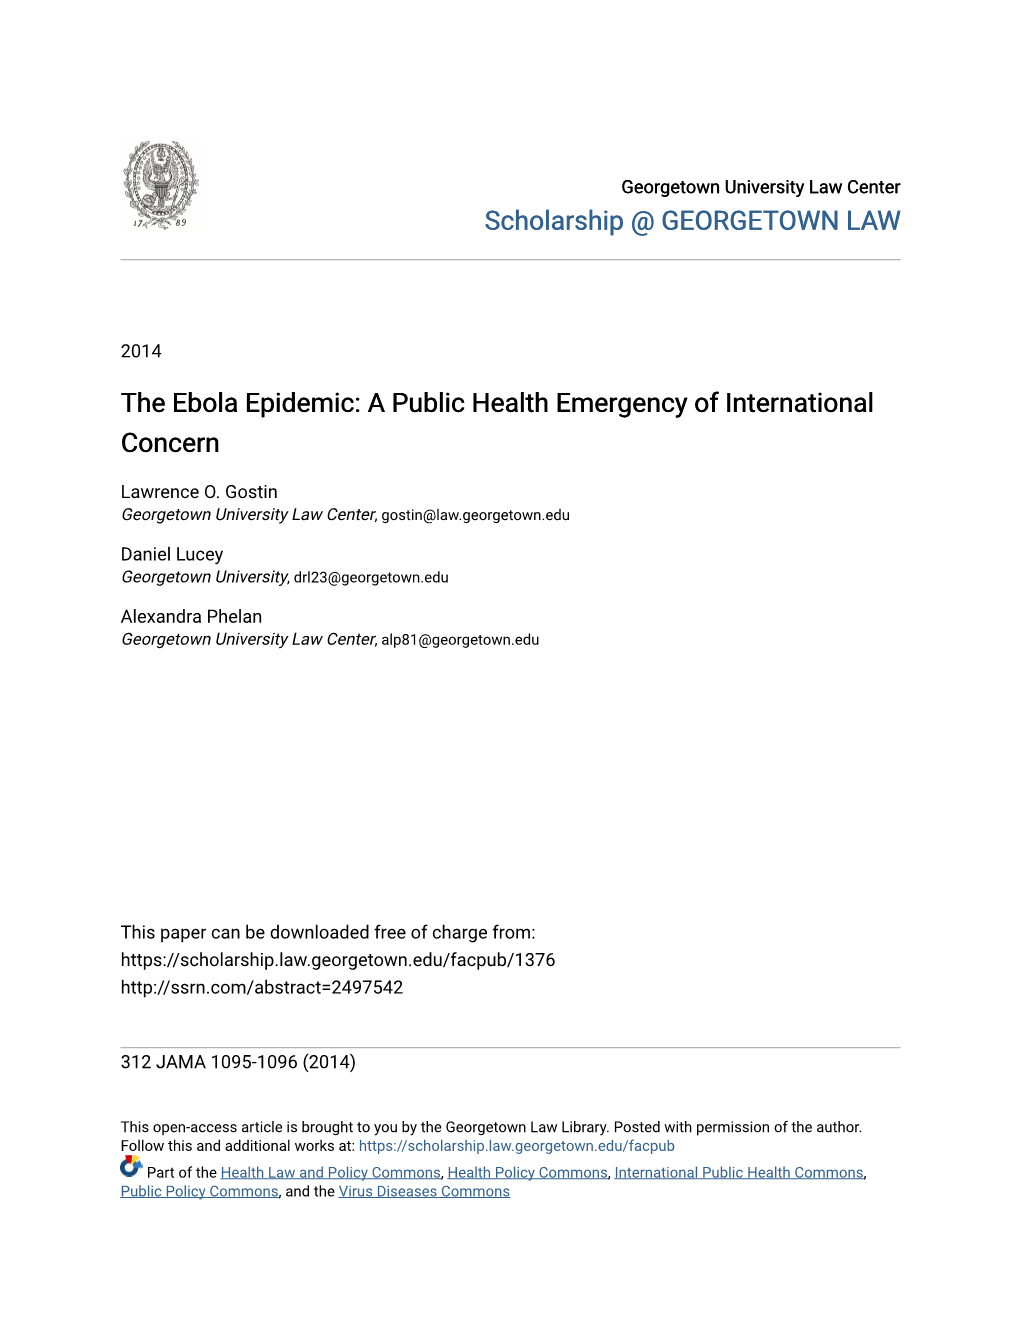 The Ebola Epidemic: a Public Health Emergency of International Concern